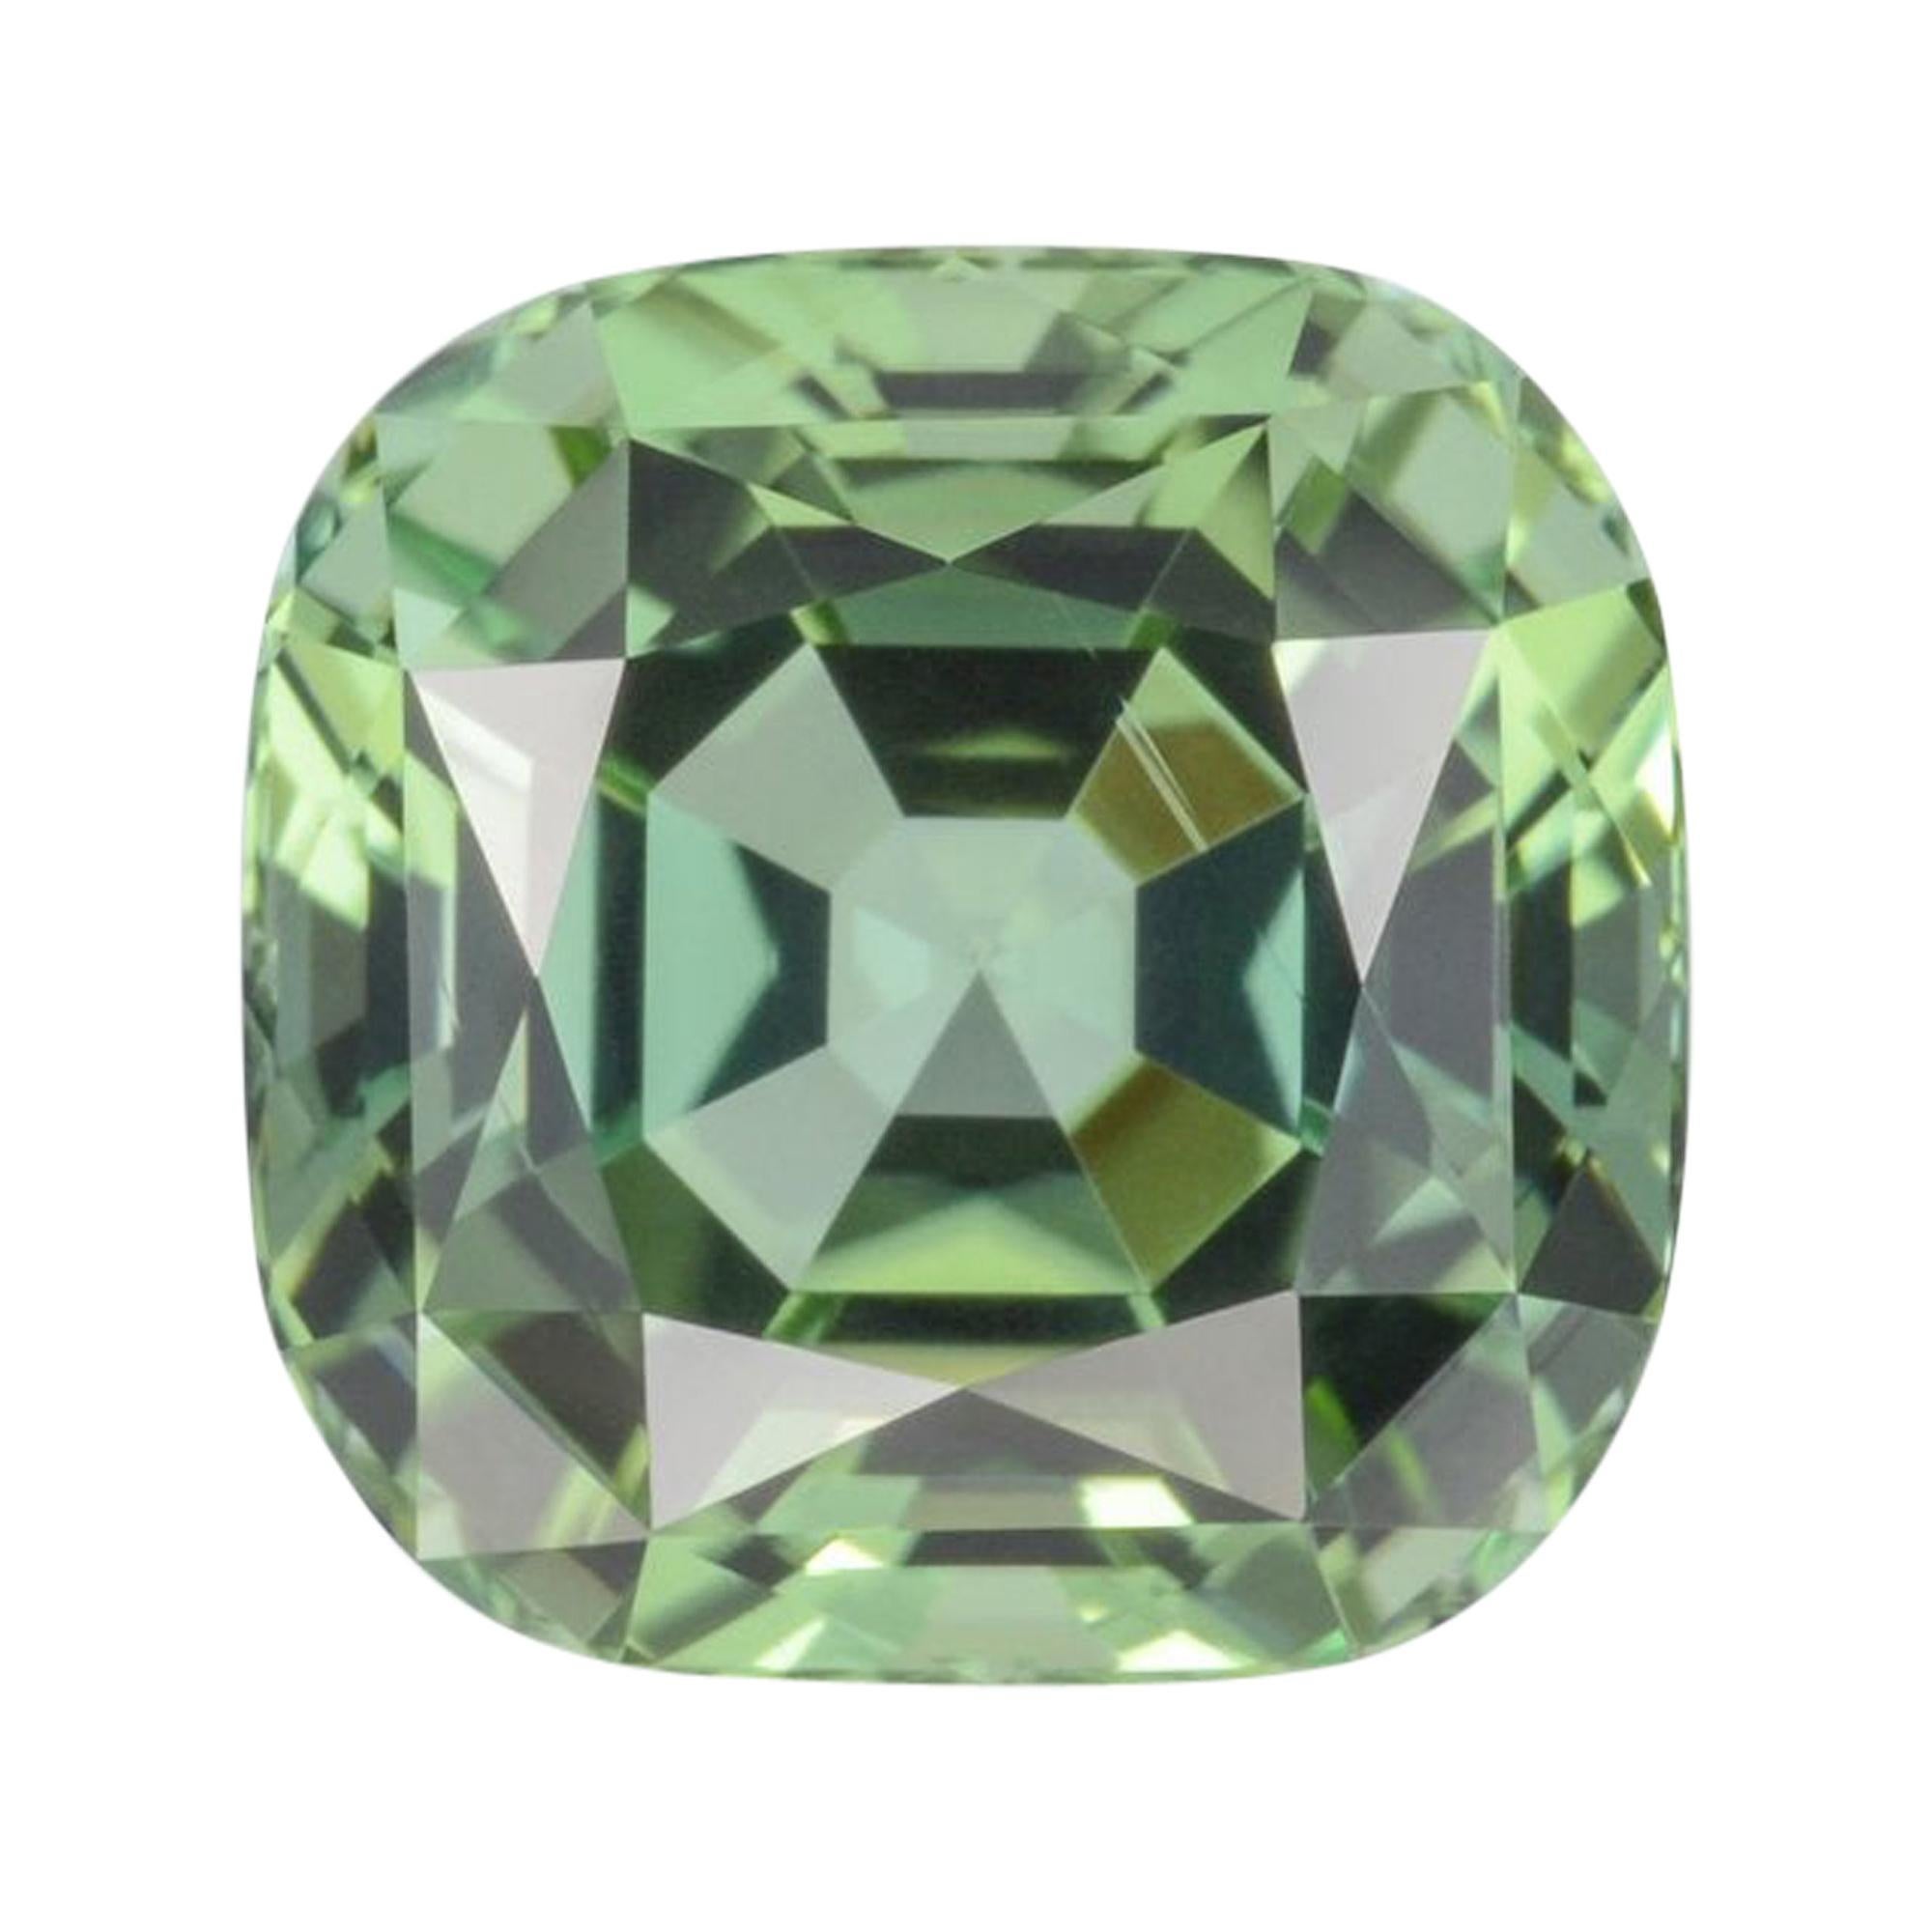 Modern Green Tourmaline Ring Gem 5.27 Carat Loose Gemstone